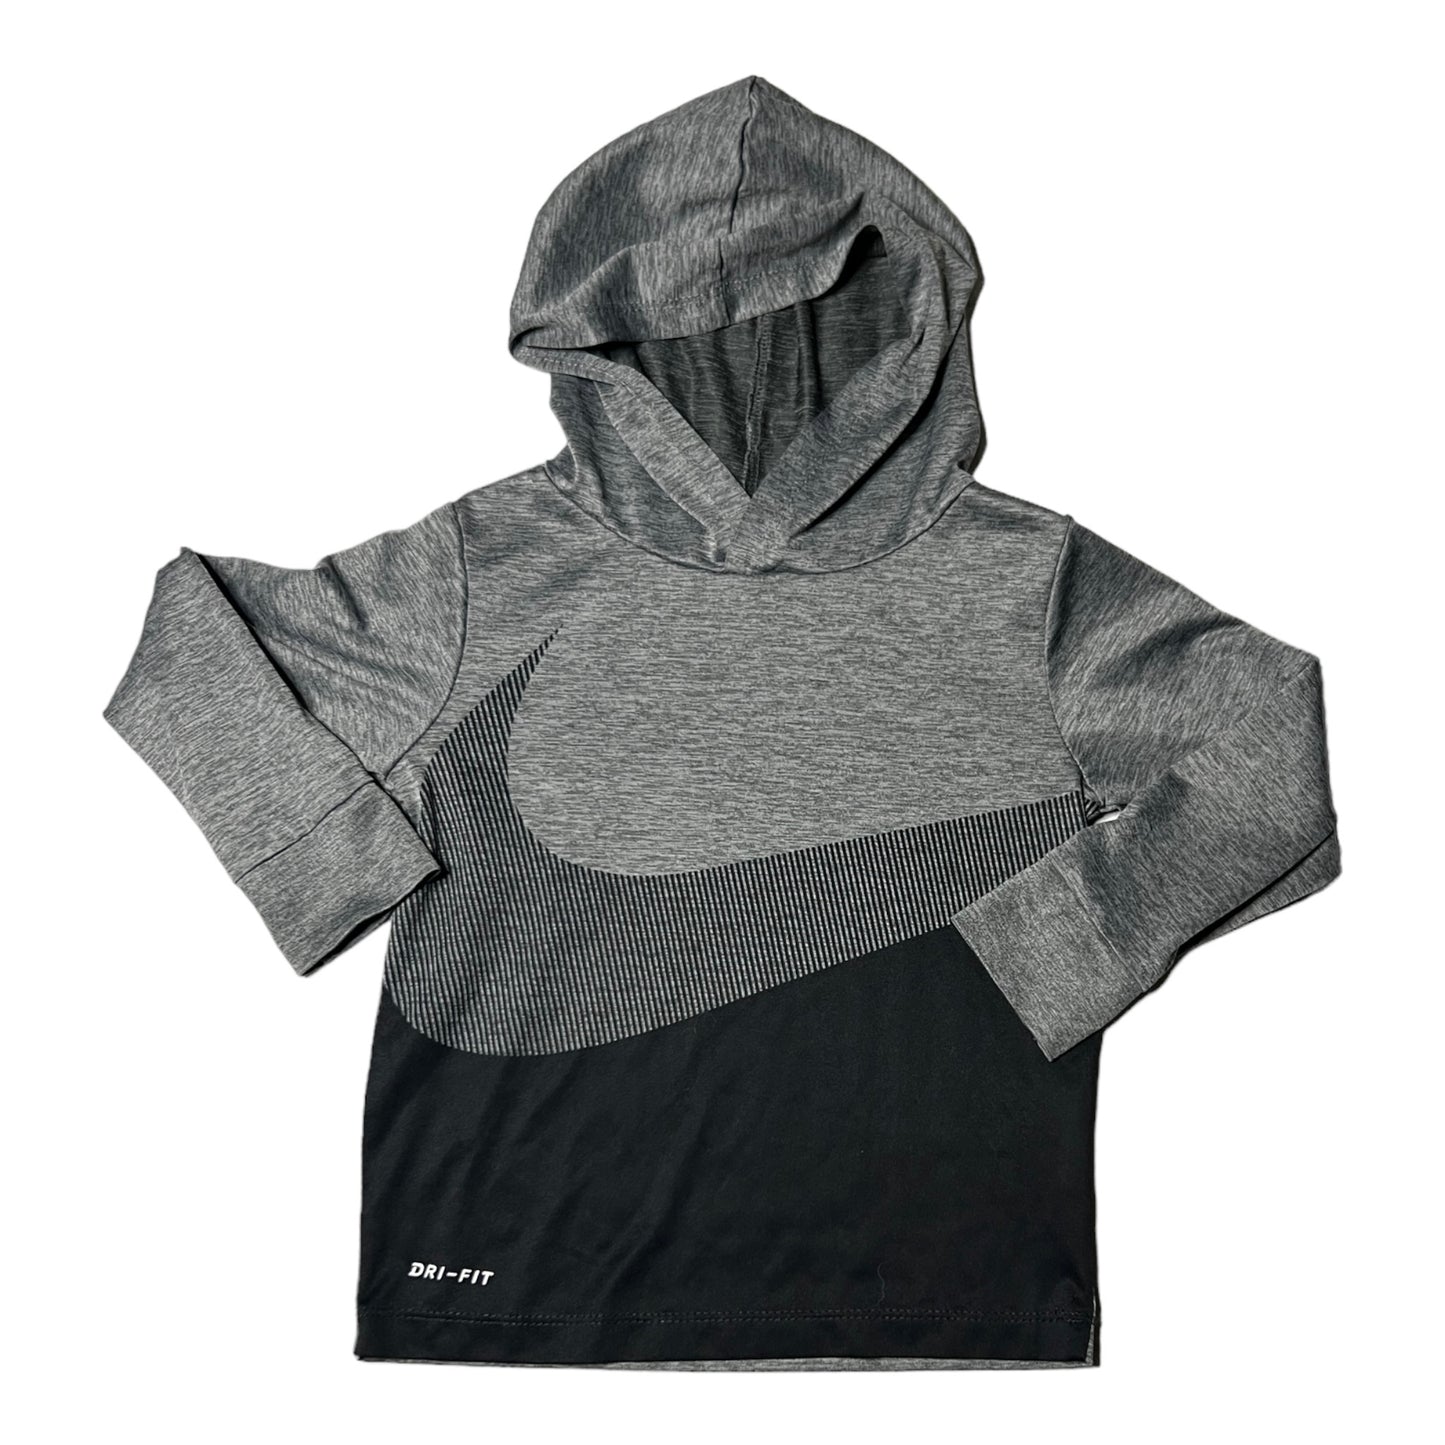 24m Nike dry fit hoody